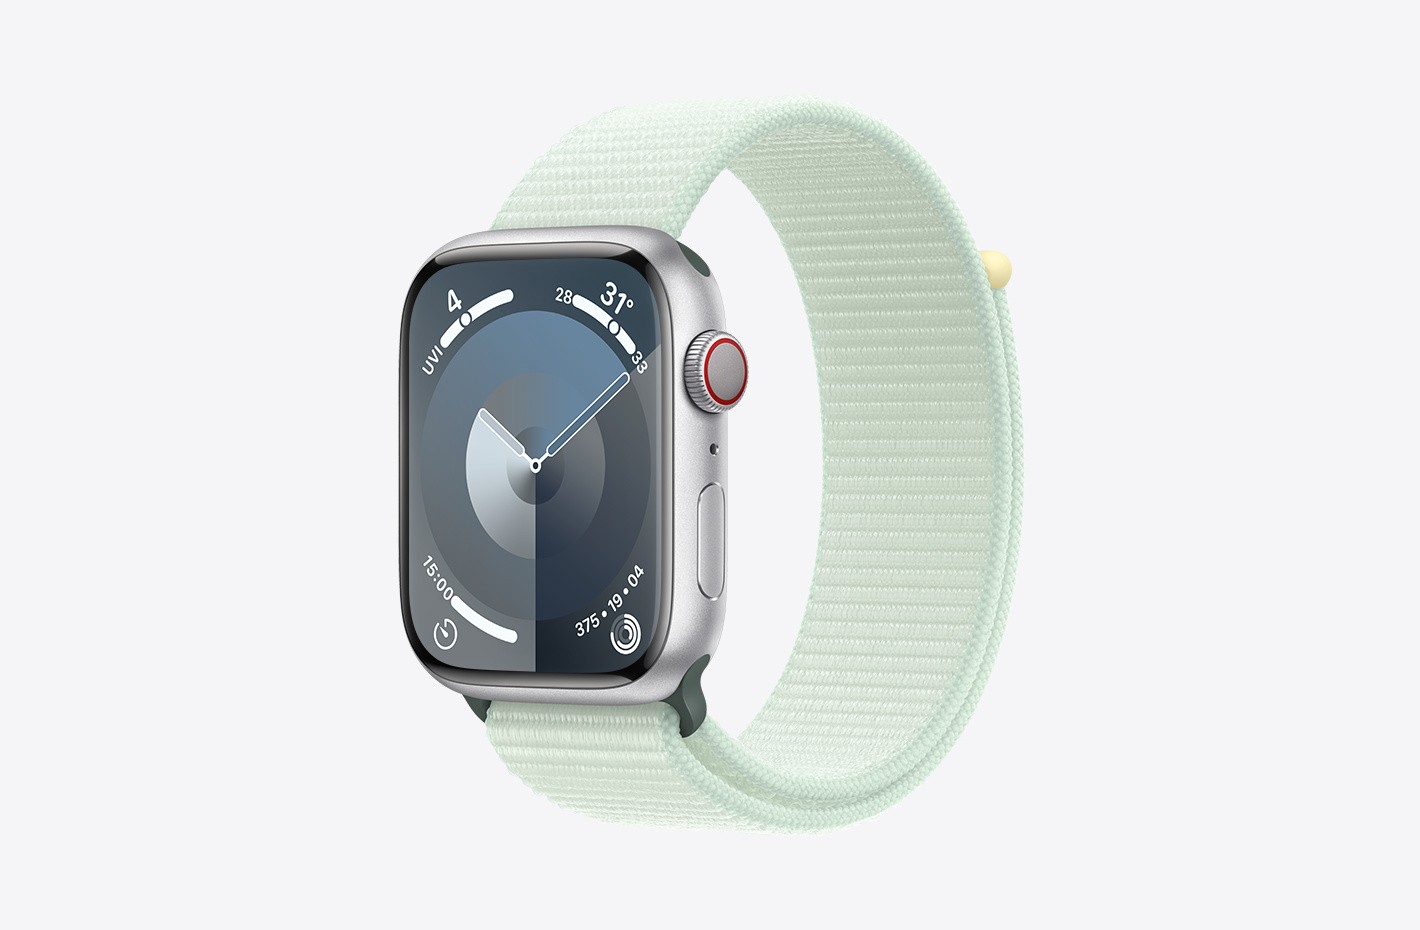 Apple Watch ตัวเรือนอะลูมิเนียม สีเงินที่มีพื้นผิวด้านและมุมมองเอียงข้างของสายแบบ Sport Loop สีเขียวมินต์อ่อน (เขียว) มาพร้อมแถบหนามเตยและไนลอนทอสองชั้น